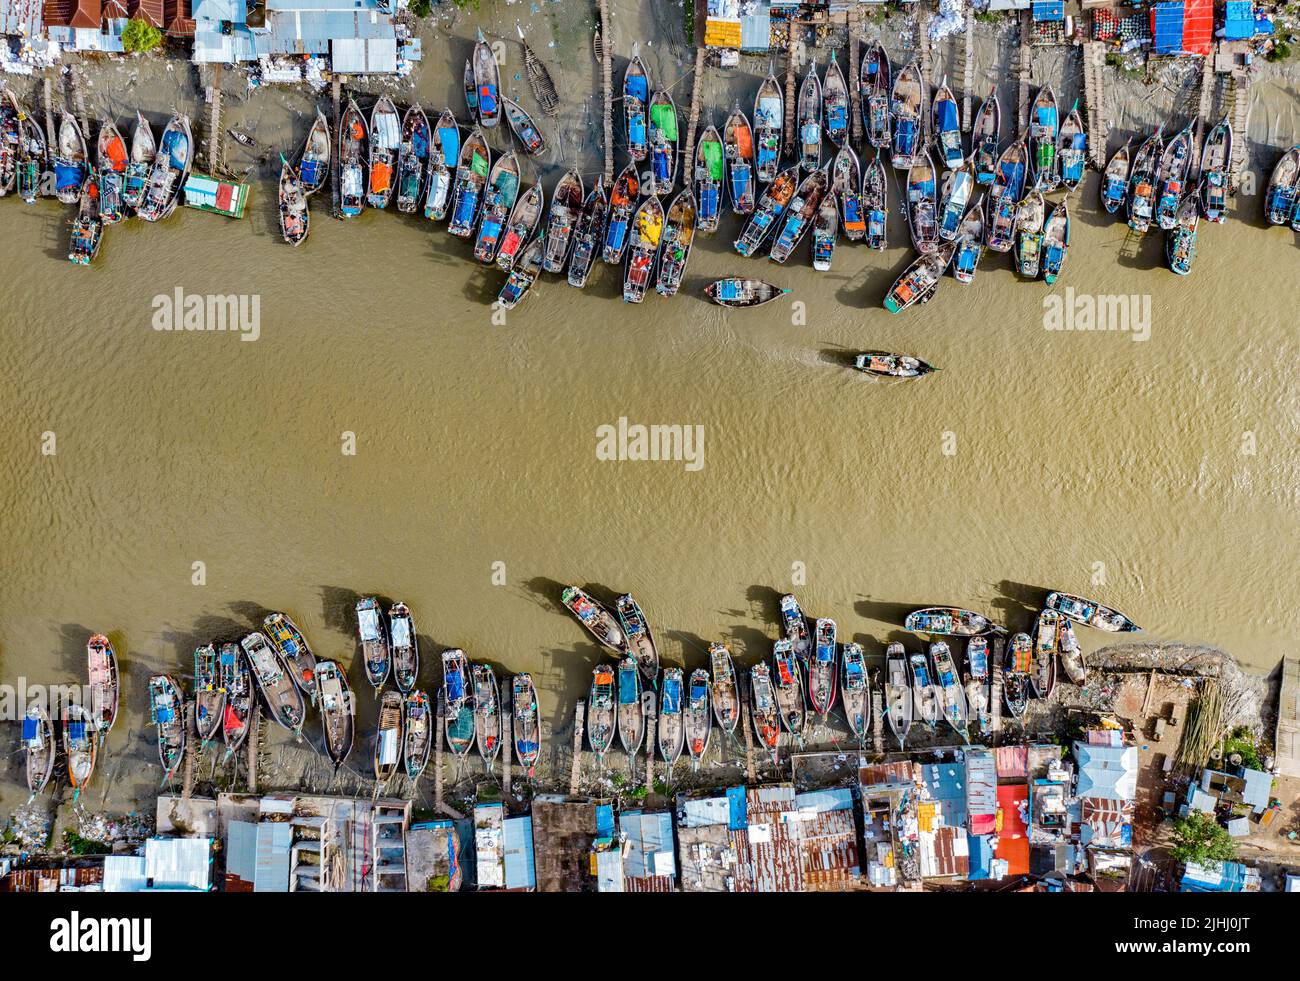 Am Flussufer sind hölzerne Boote aufgestellt, die verschiedene schöne visuelle Muster geschaffen haben. Stockfoto